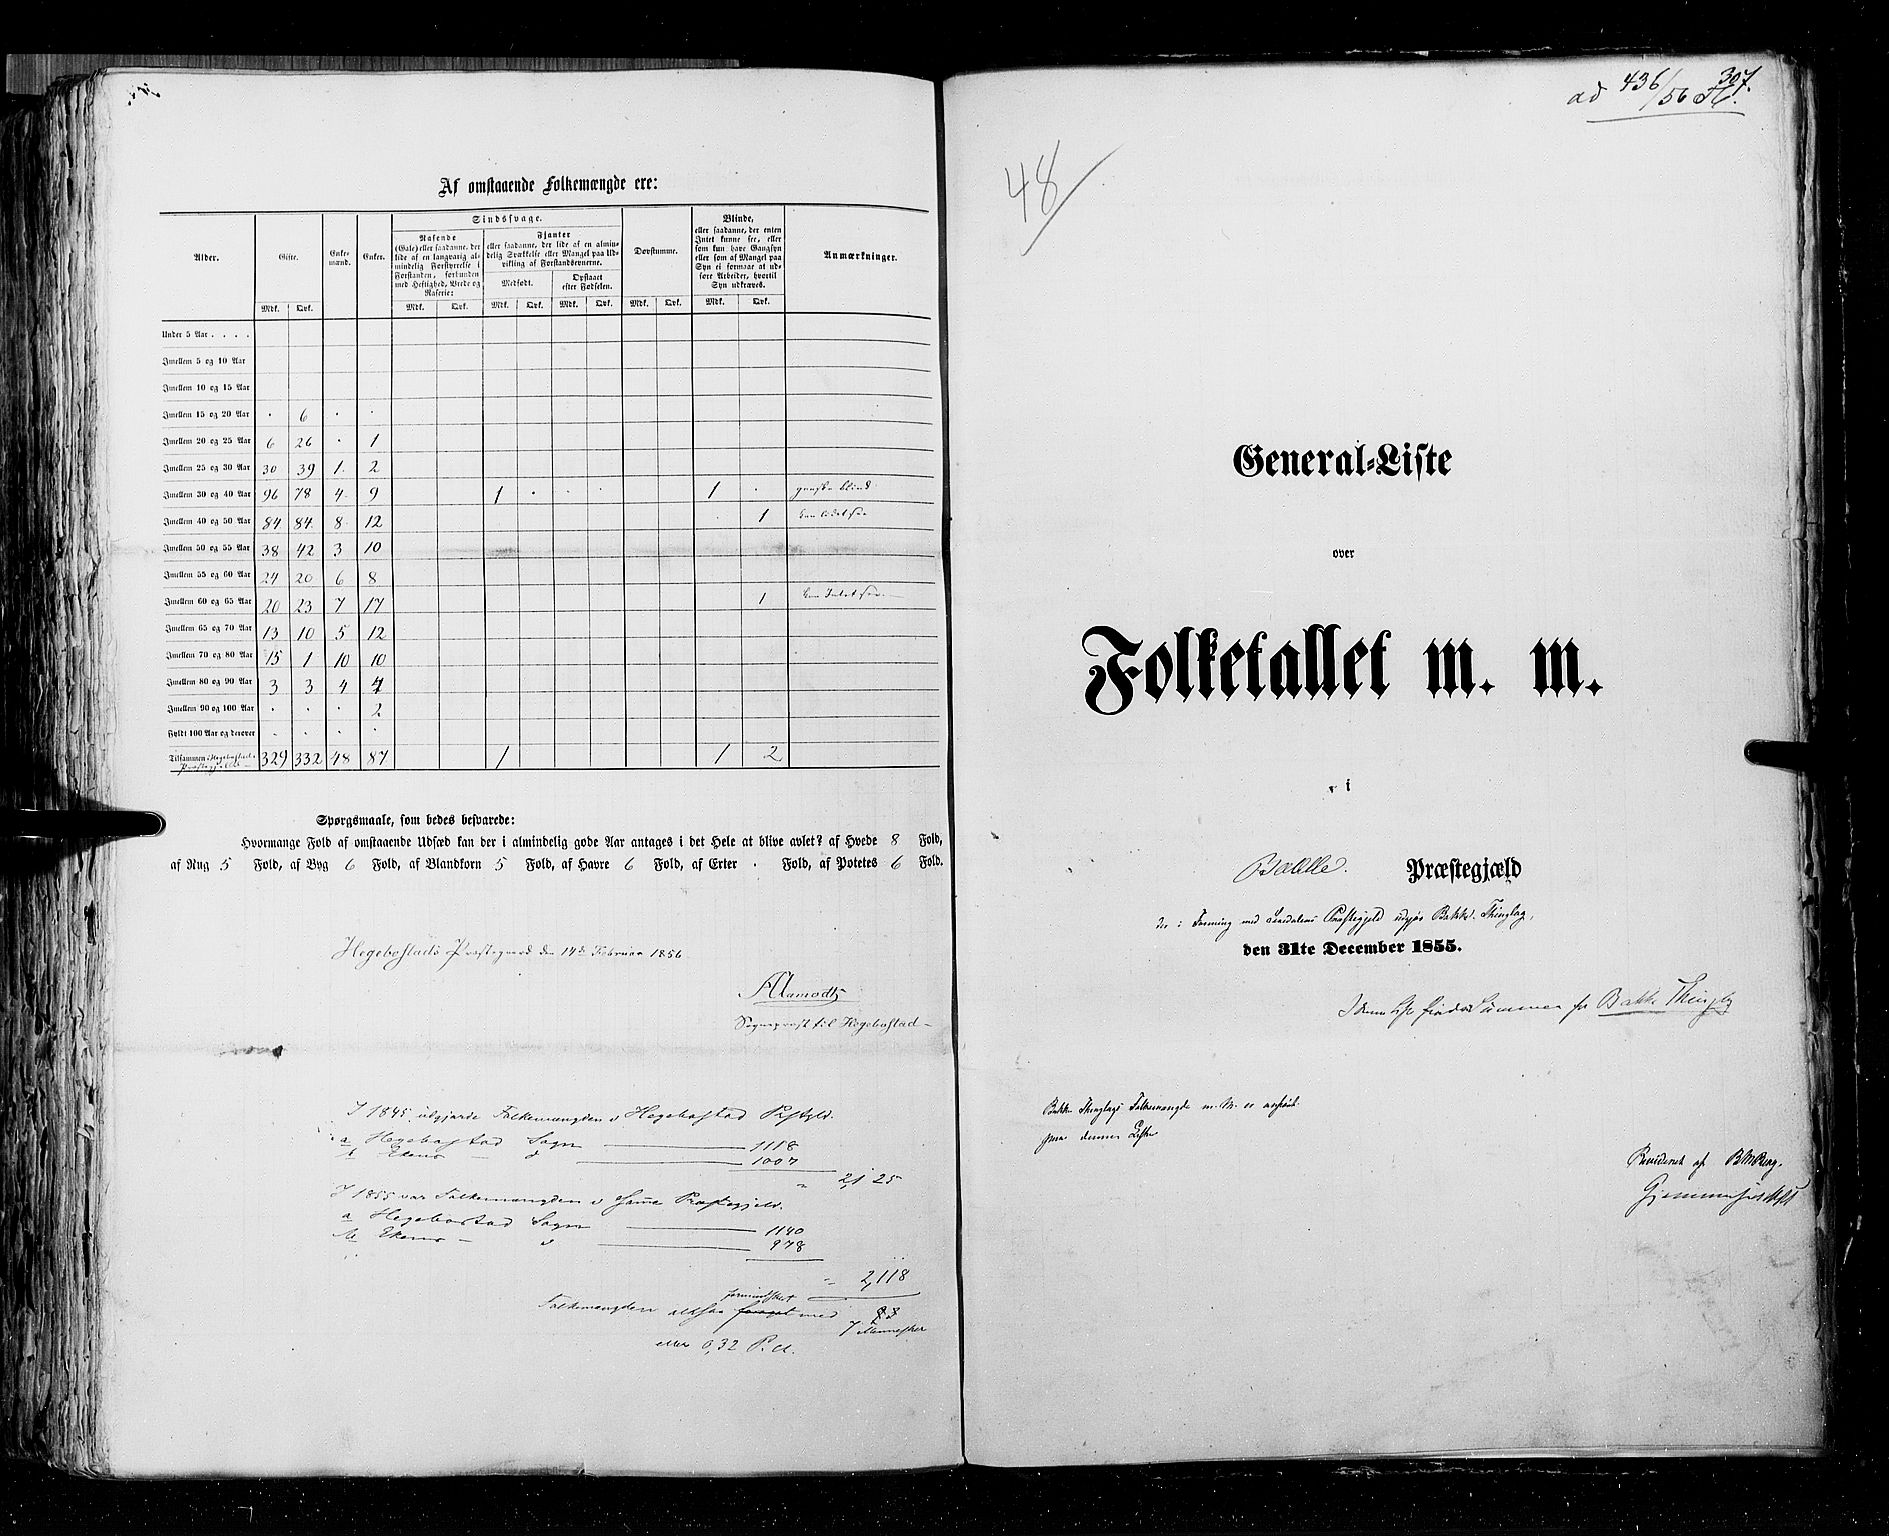 RA, Census 1855, vol. 3: Bratsberg amt, Nedenes amt og Lister og Mandal amt, 1855, p. 307